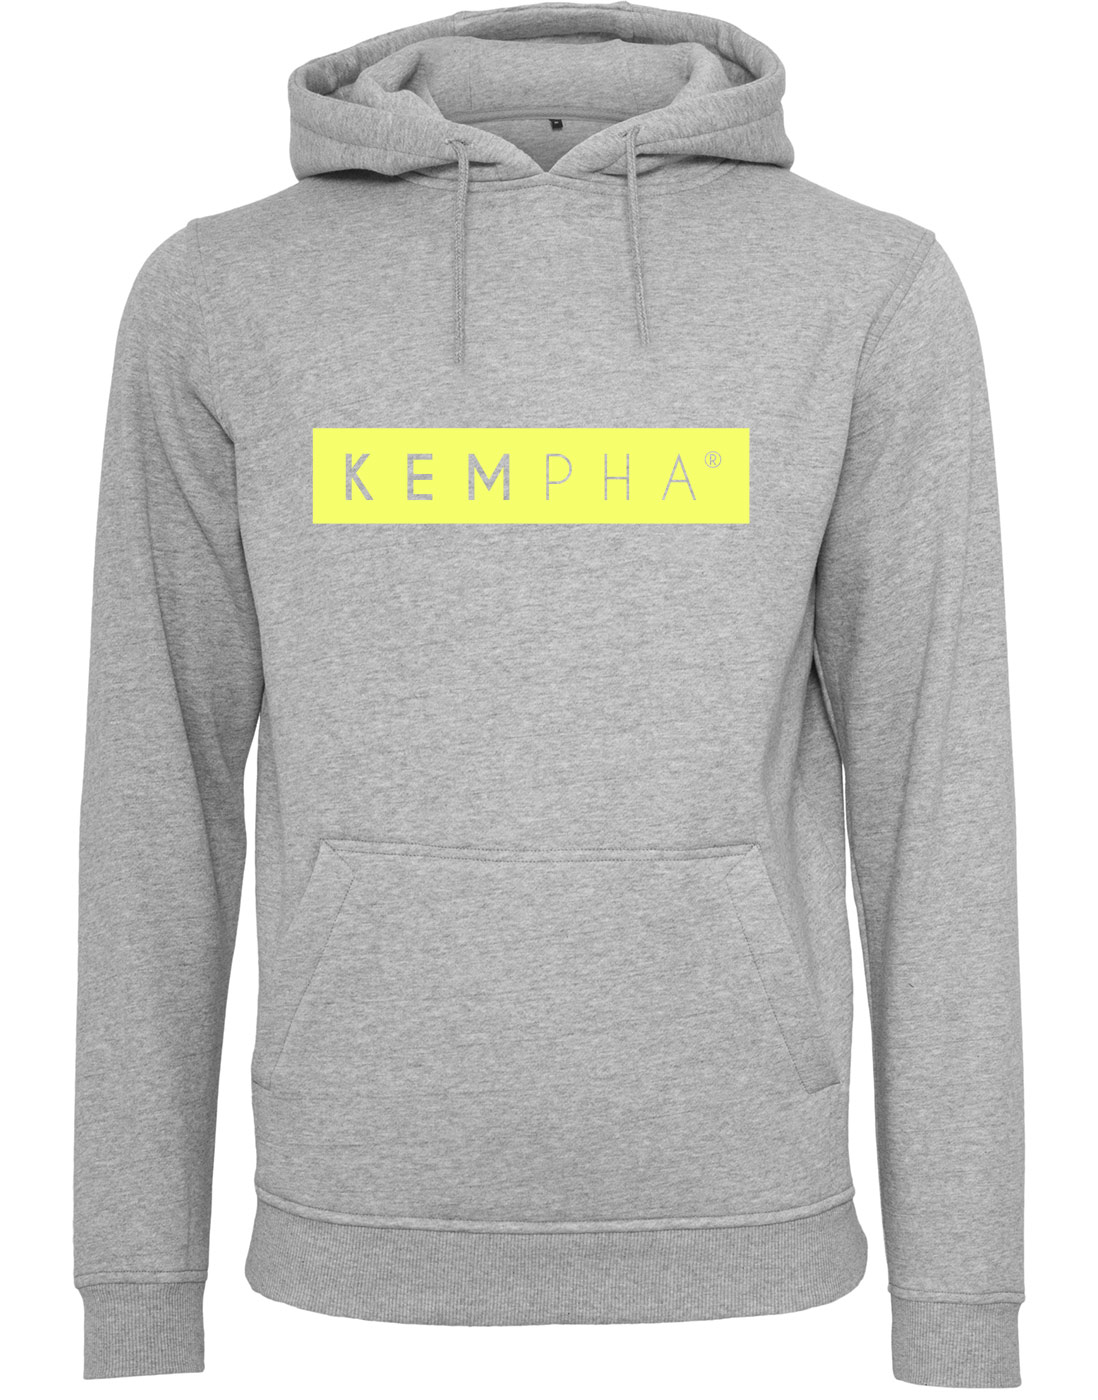 Kempha Premium Hoodie NEONgelb auf heathergrey